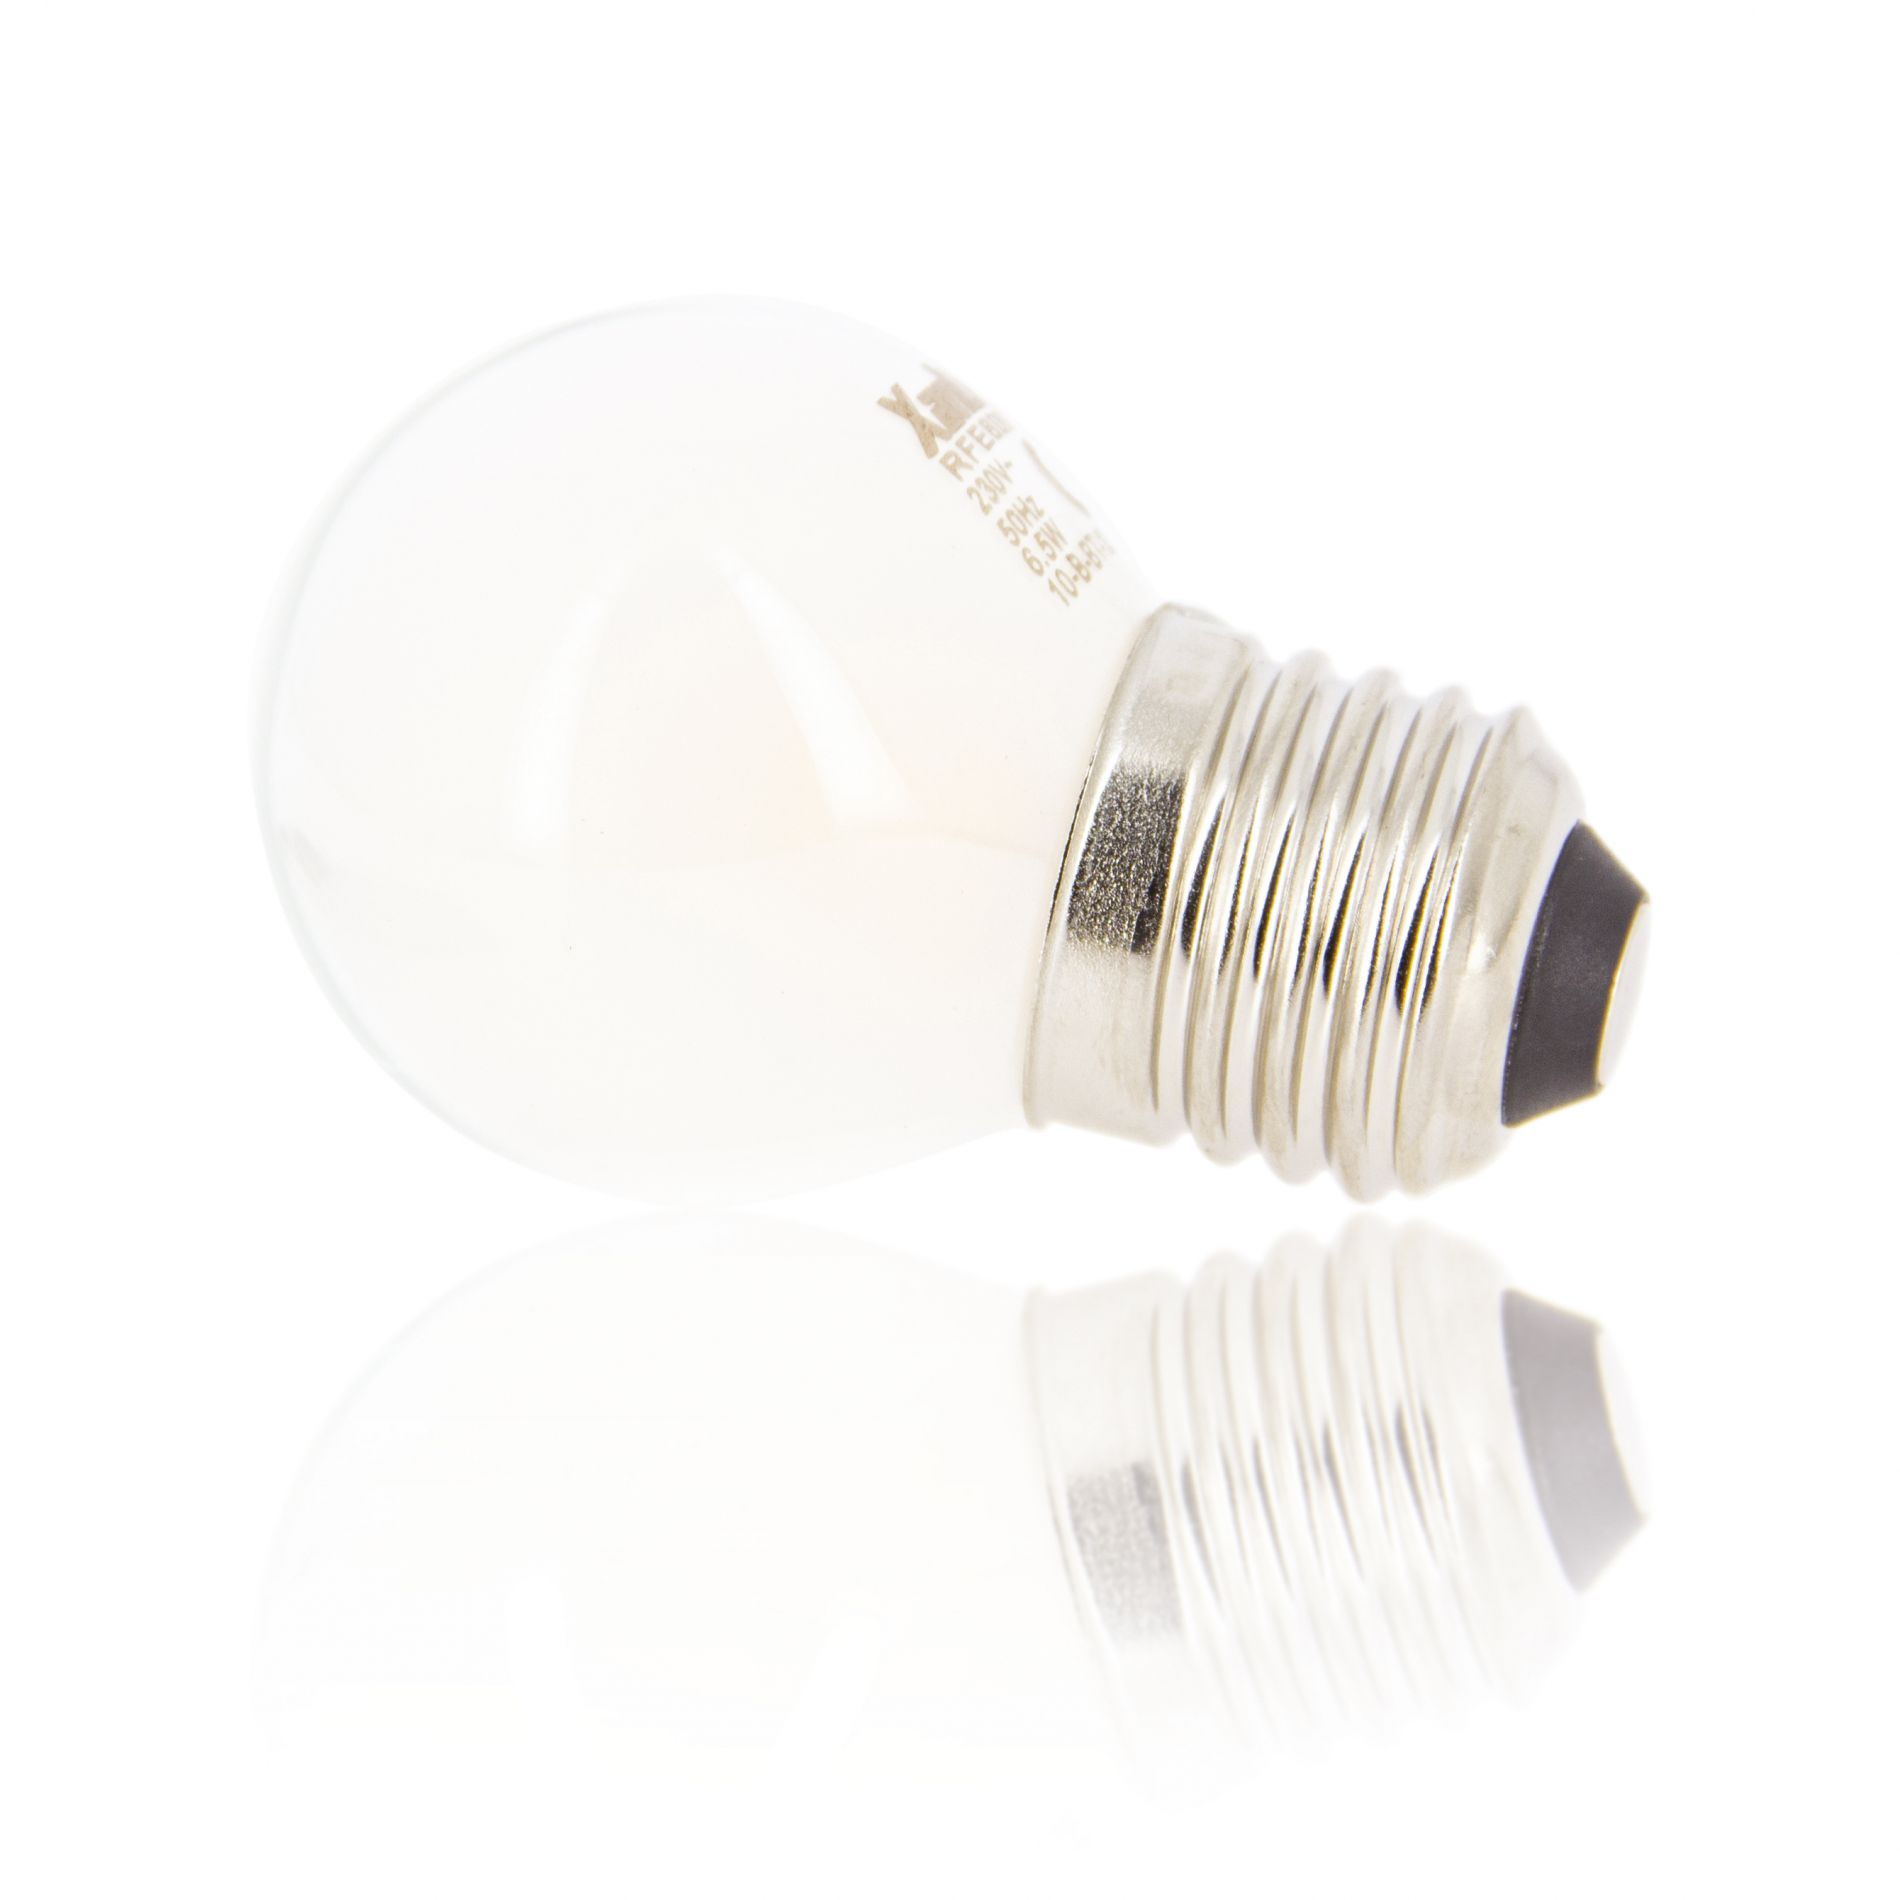 Ampoule LED dimmable E27 SOFTLINE éclairage blanc naturel 12W 1521 lumens  Ø8cm - Keria et Laurie Lumière